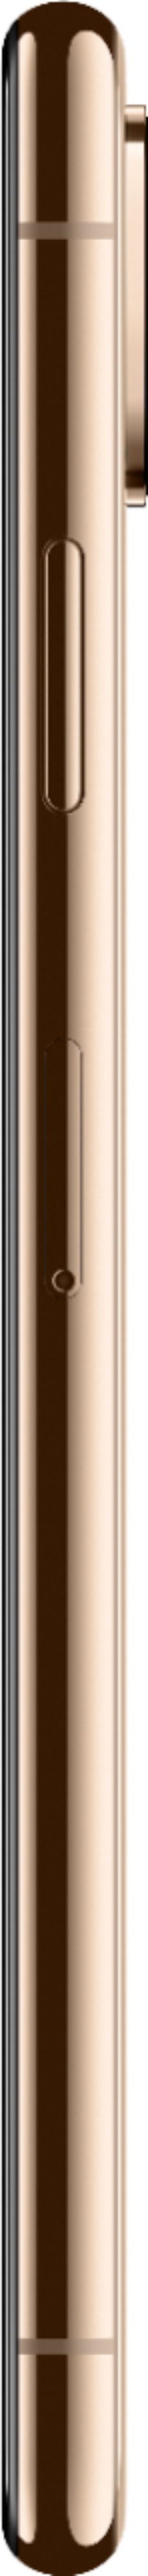 スマートフォン/携帯電話 スマートフォン本体 Best Buy: Apple iPhone XS Max 64GB Gold (Verizon) MT5C2LL/A